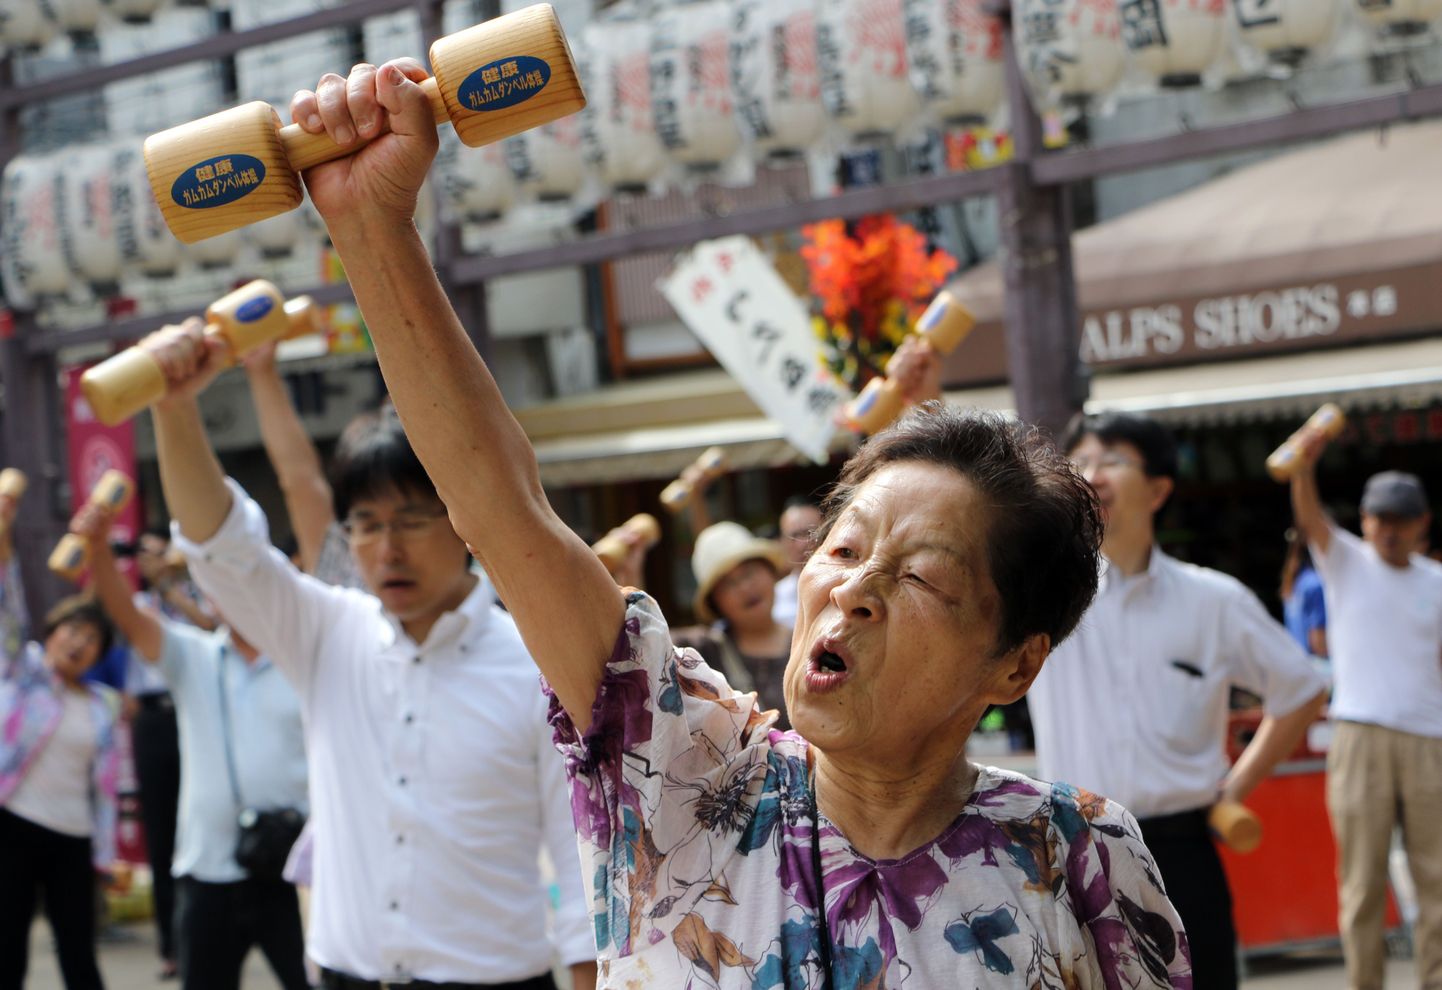 Iga neljas jaapanlane 127miljonilisest elanikkonnast on üle 65 aasta vana, 2035. aastaks isegi iga kolmas.